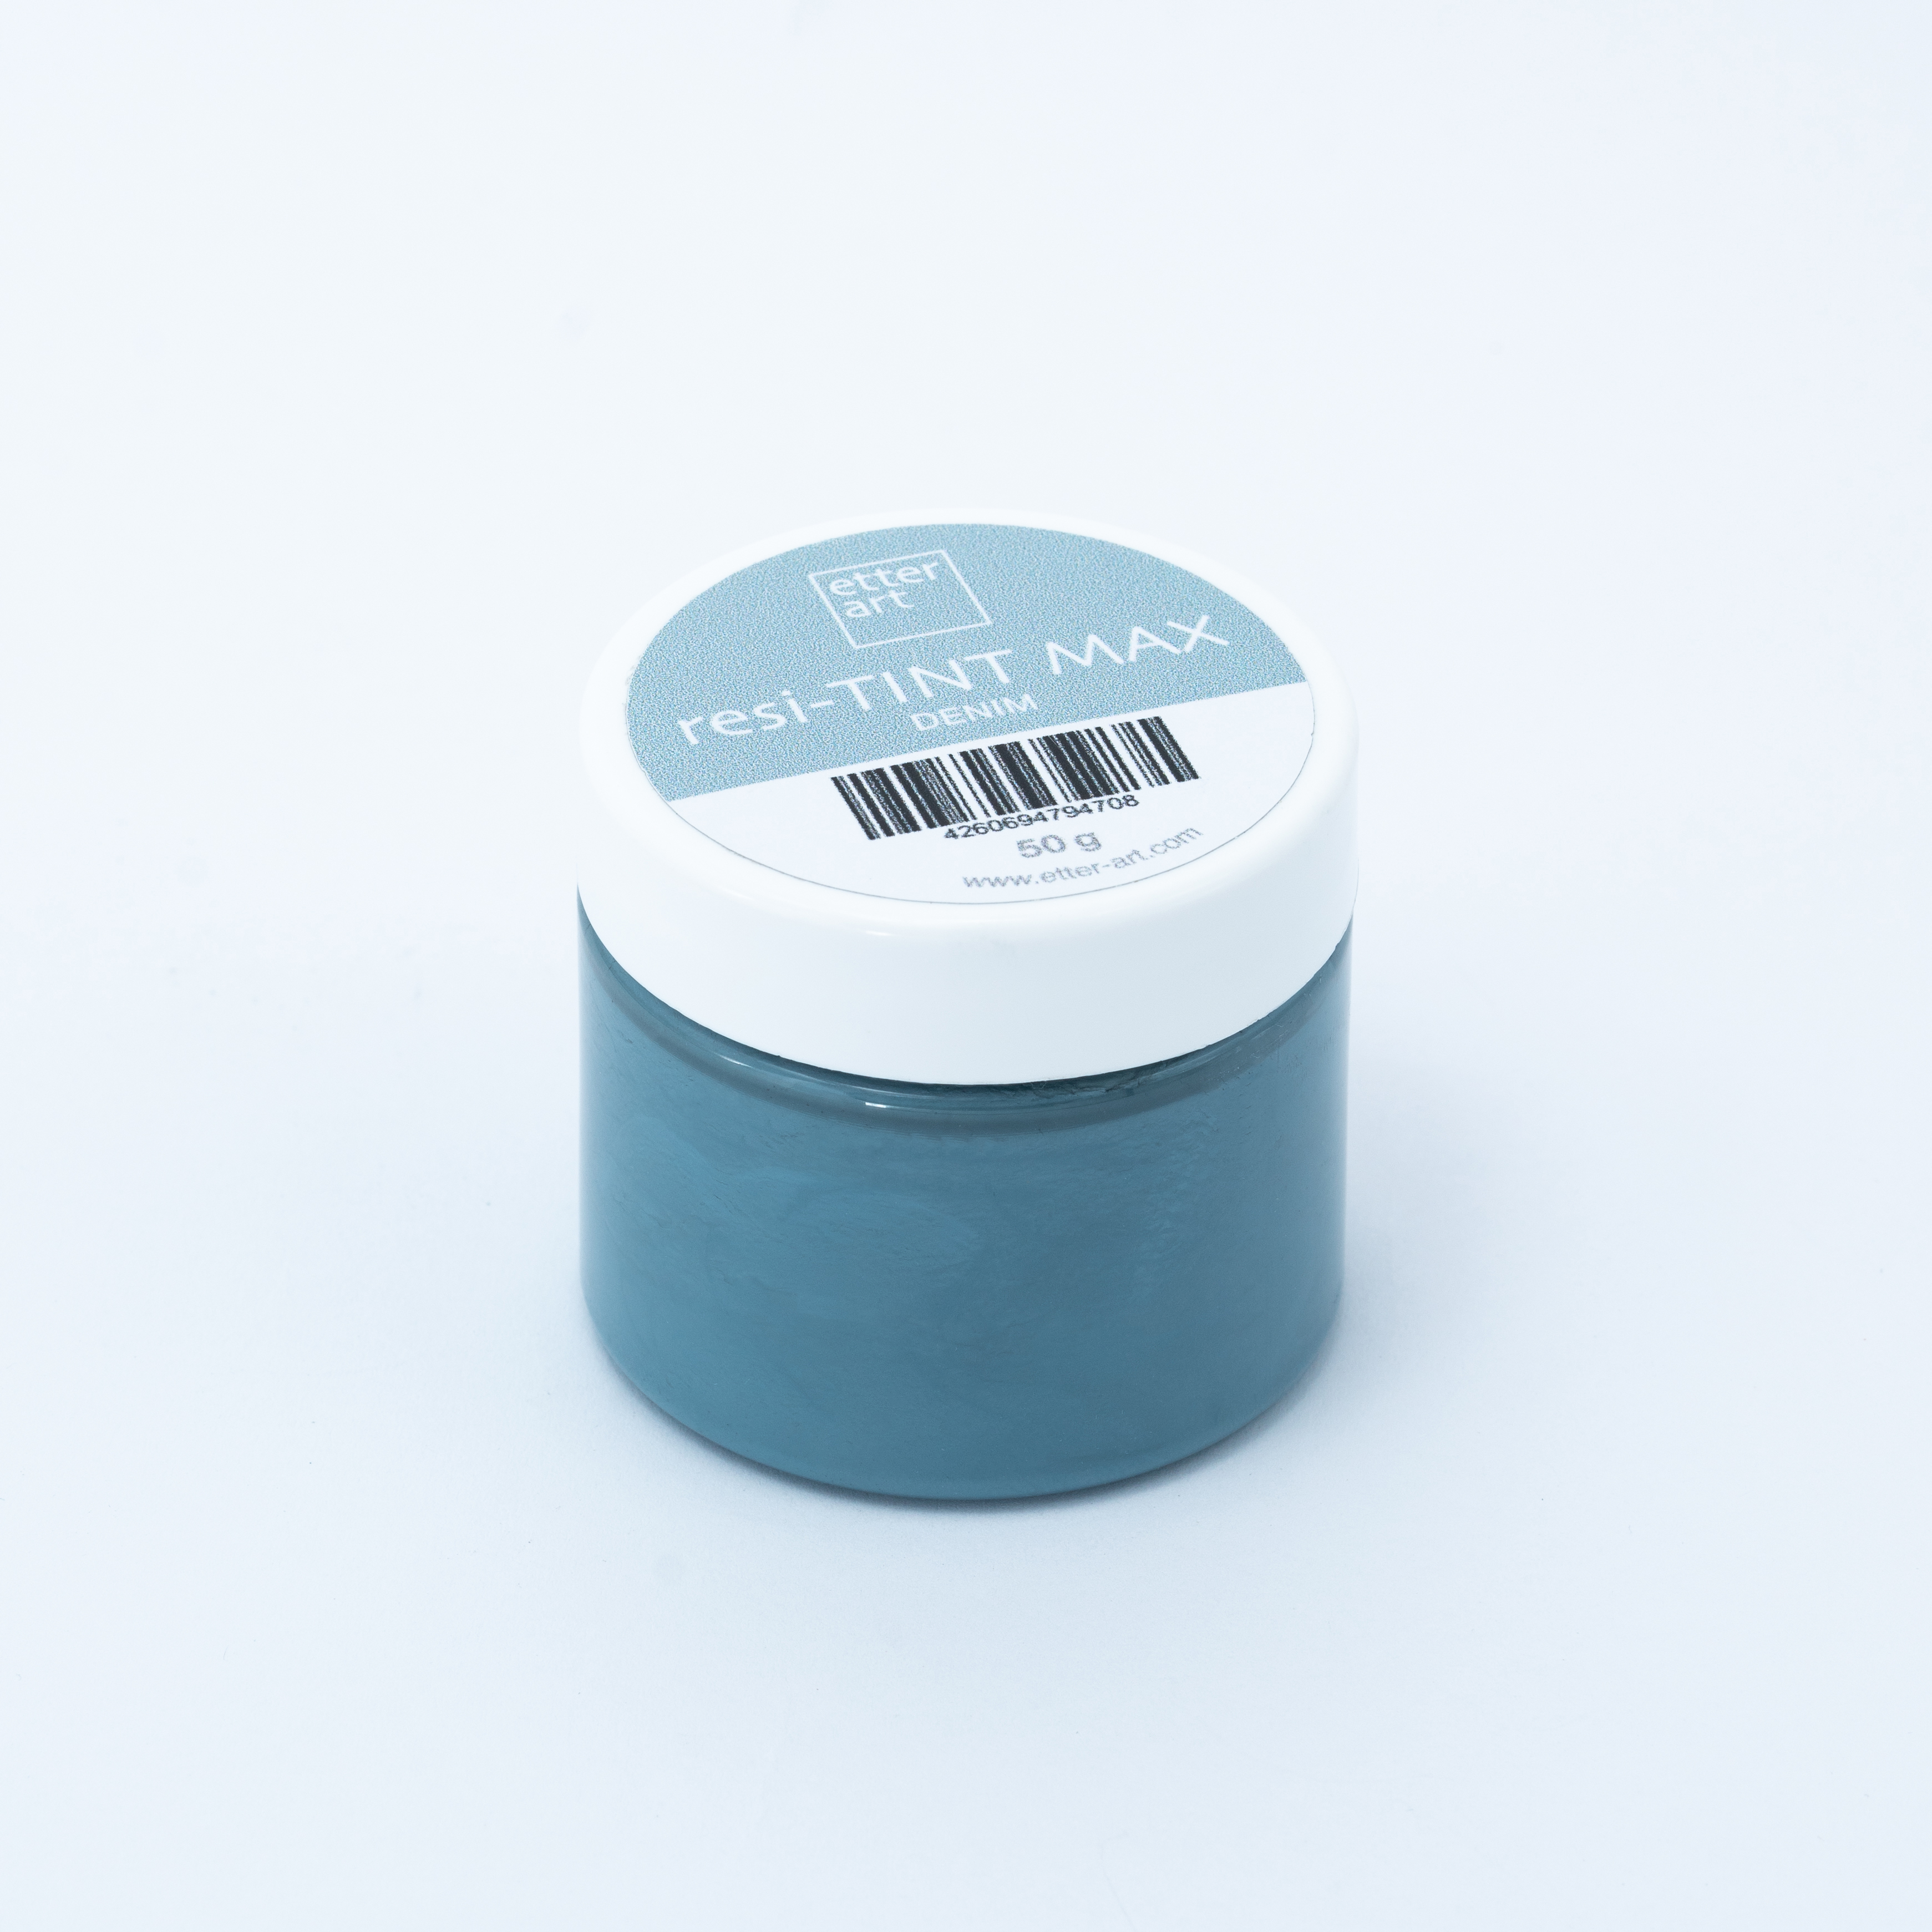 resi-TINT MAX Pigment Pastes in 33 Colors Denim 50 g